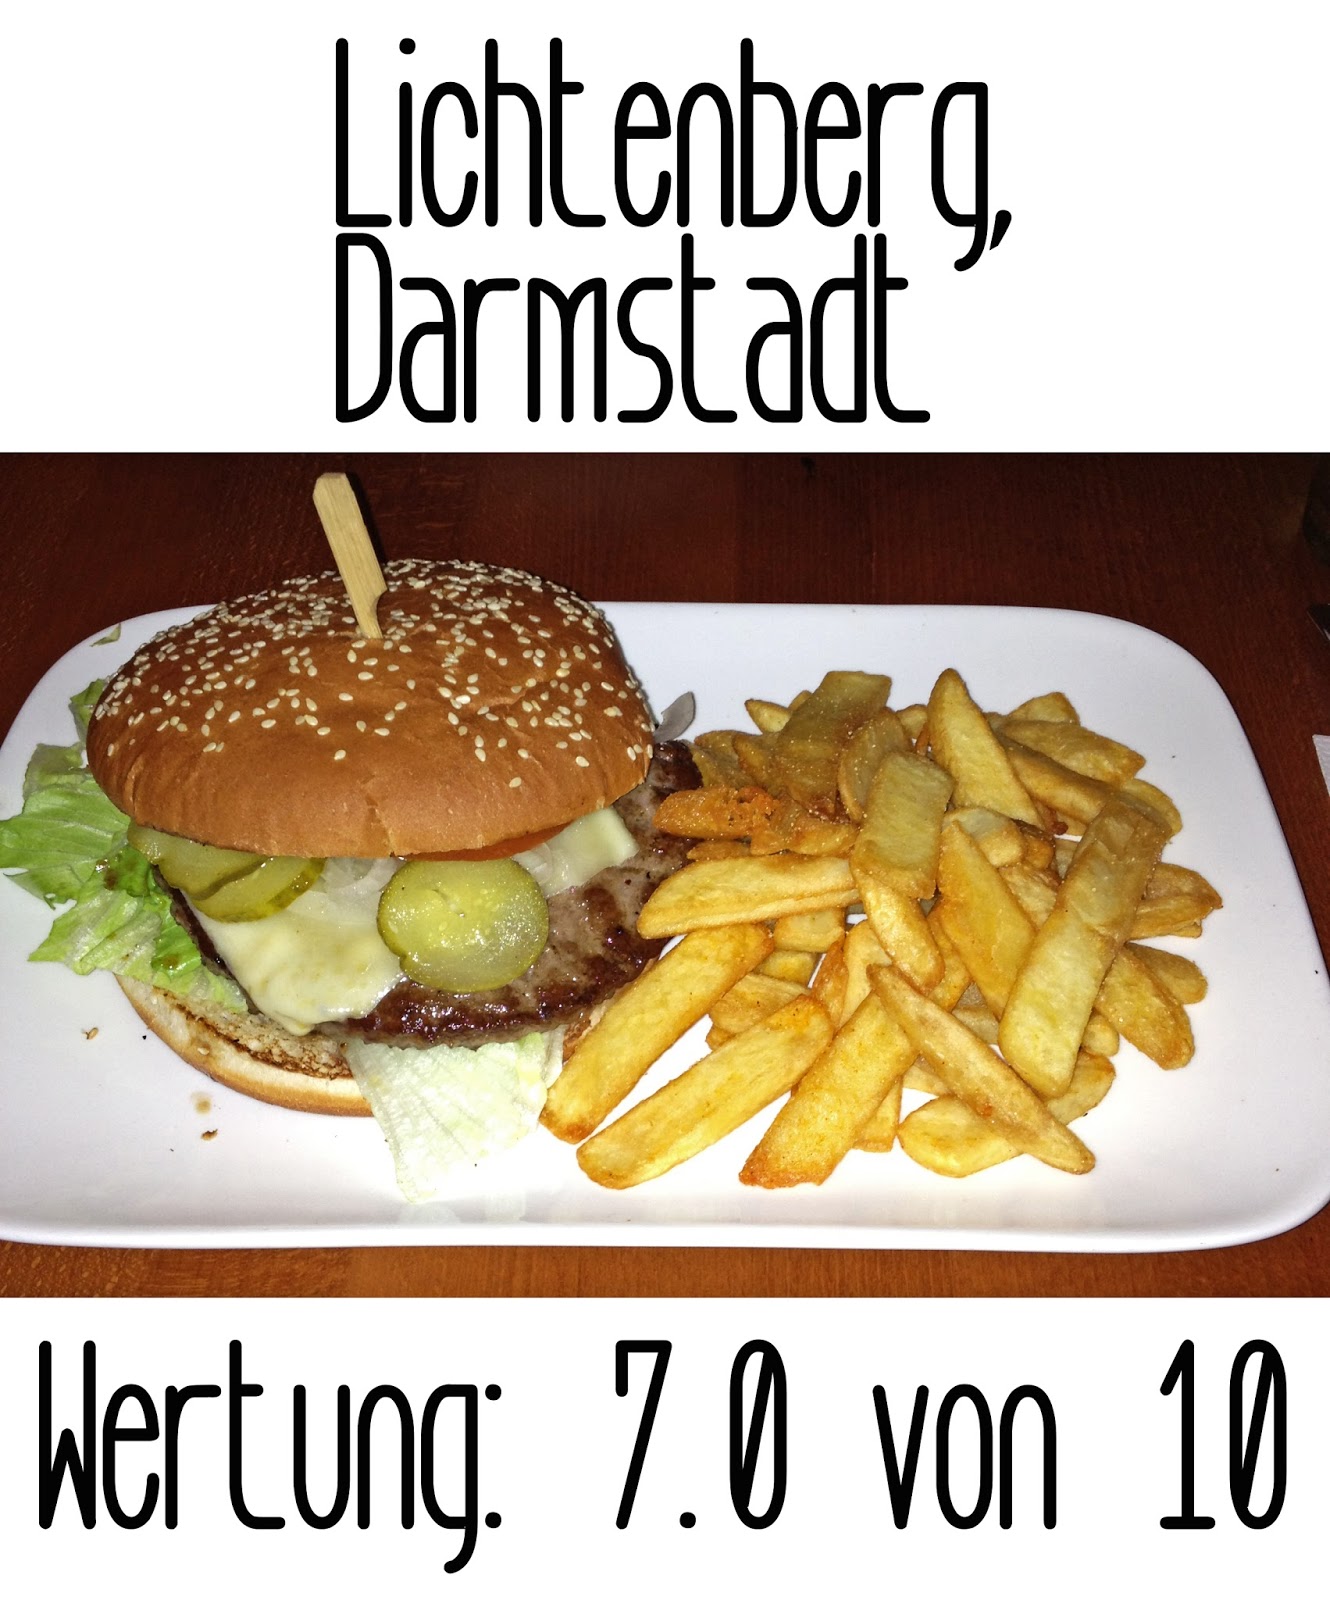 http://germanysbestburger.blogspot.de/2013/09/nach-2-wochen-ohne-burgertest-wird-es.html